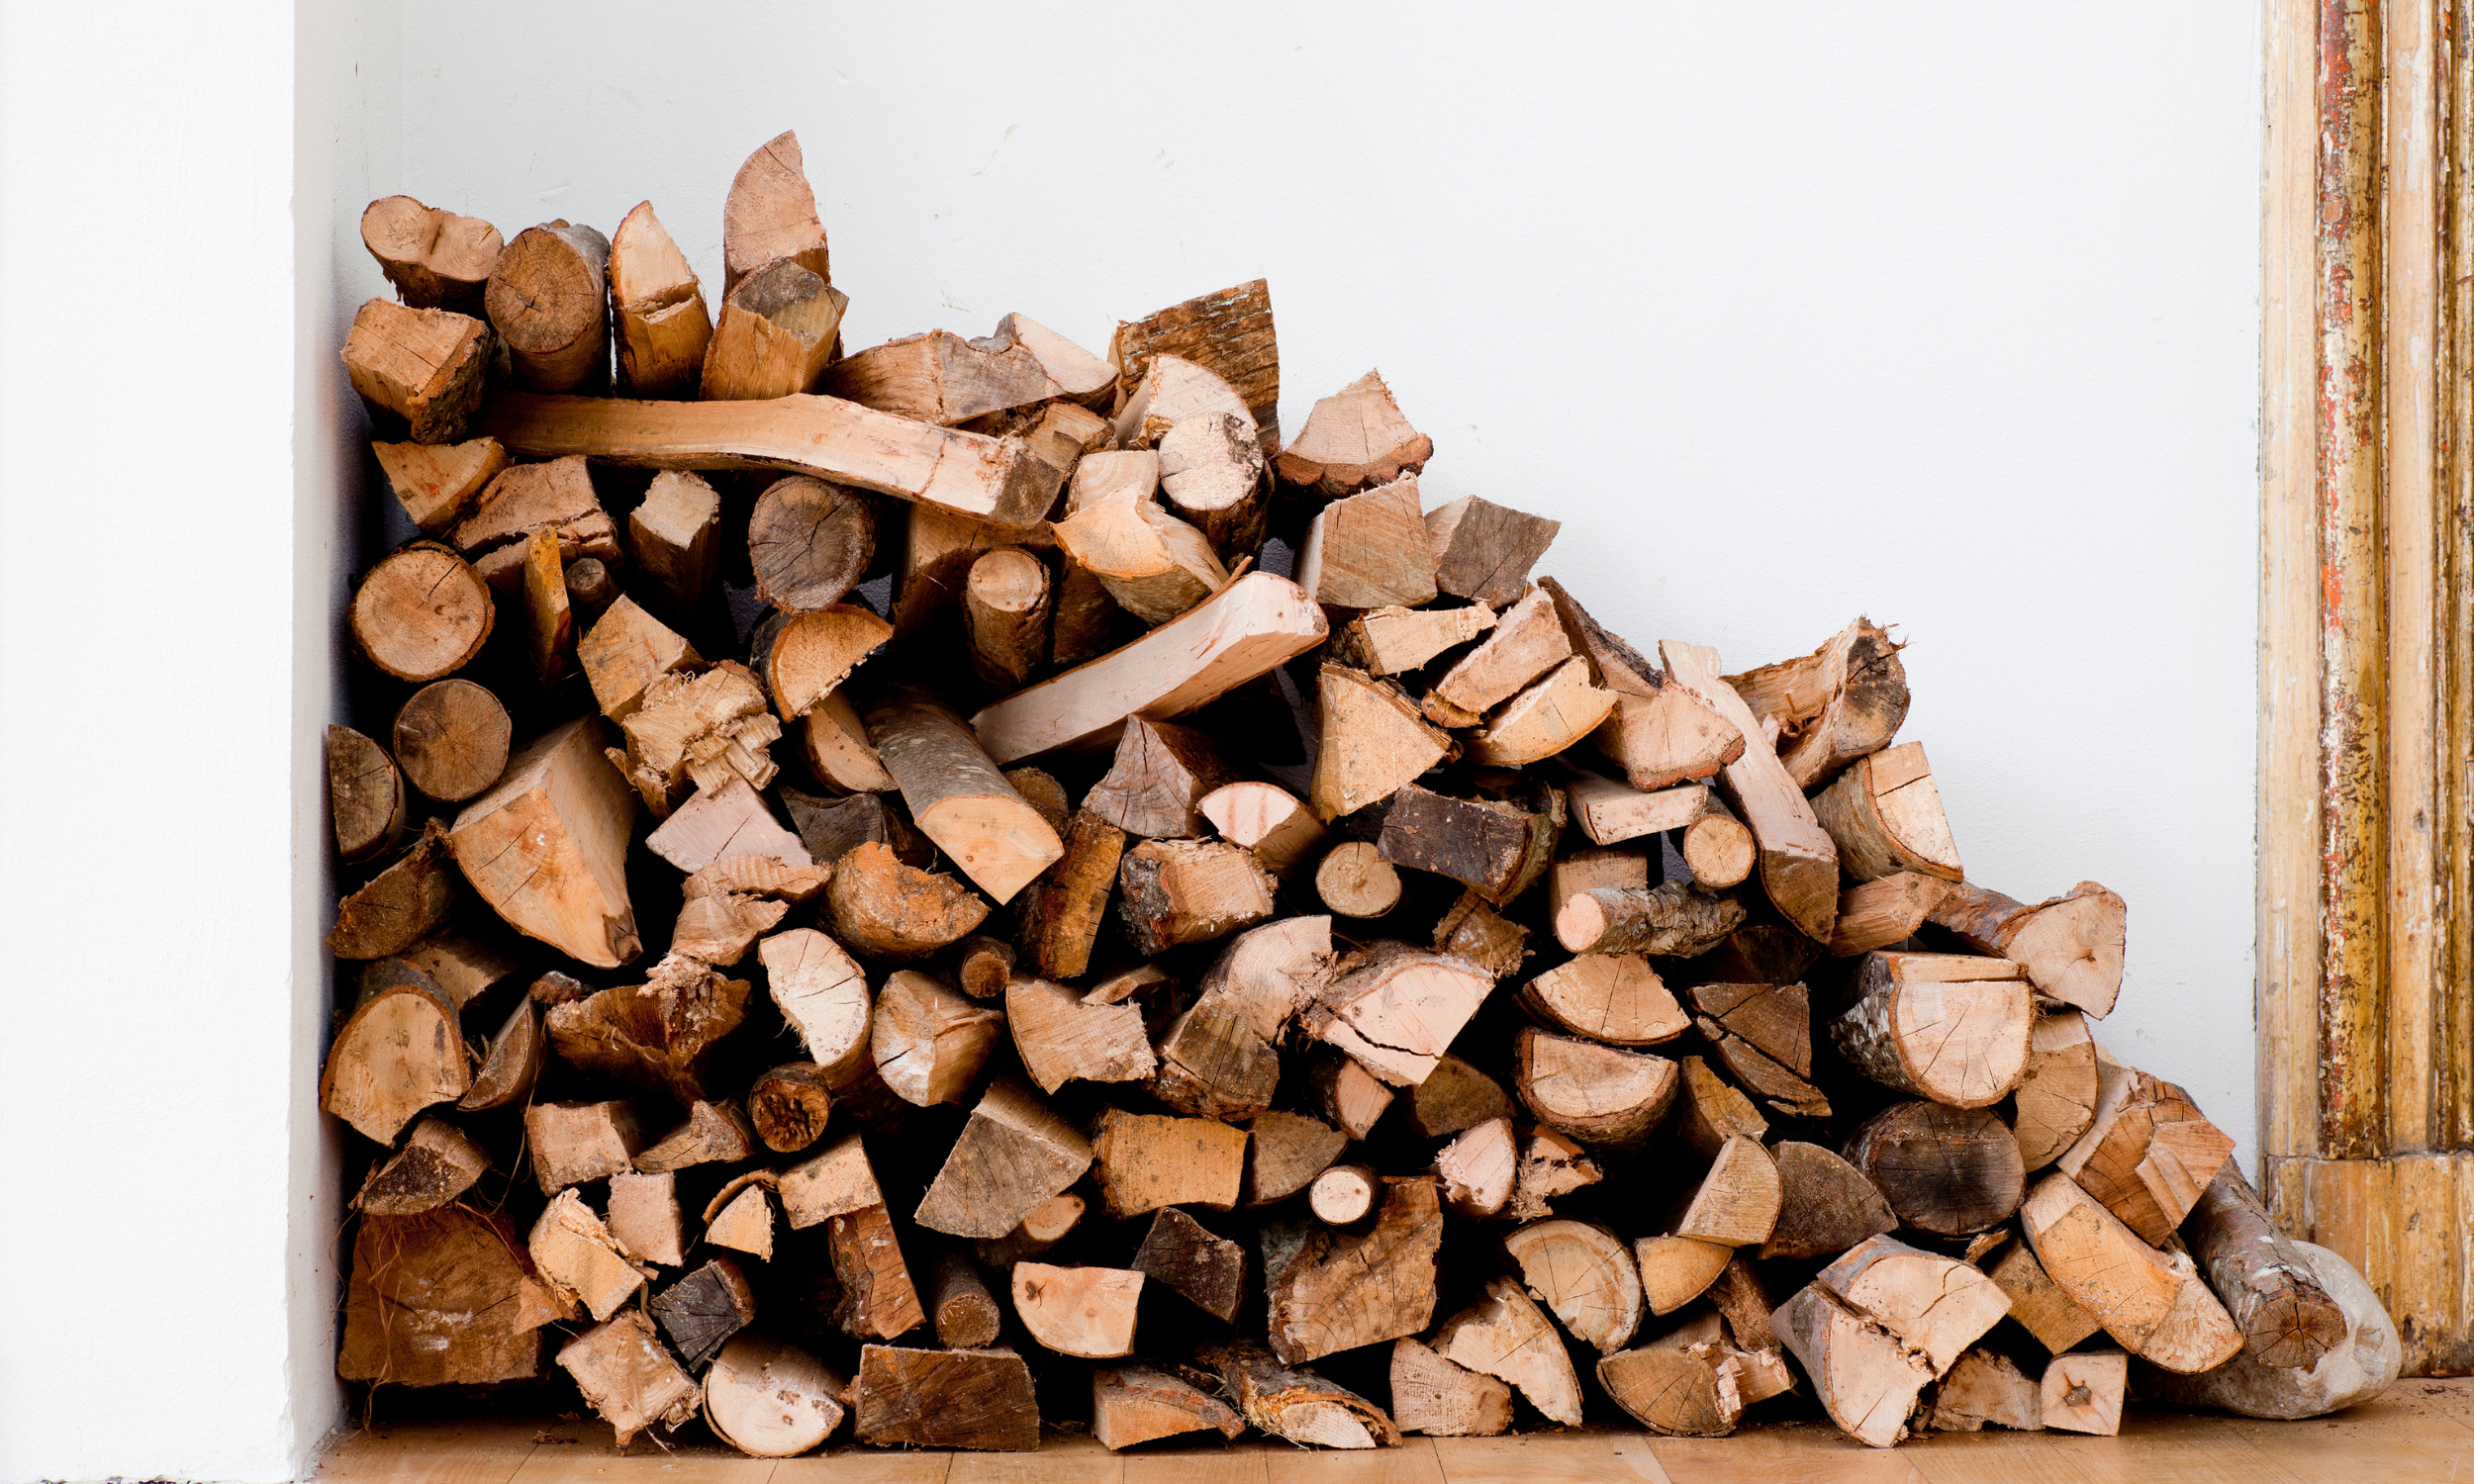 Chauffage au bois : pollution, prix, déforestation